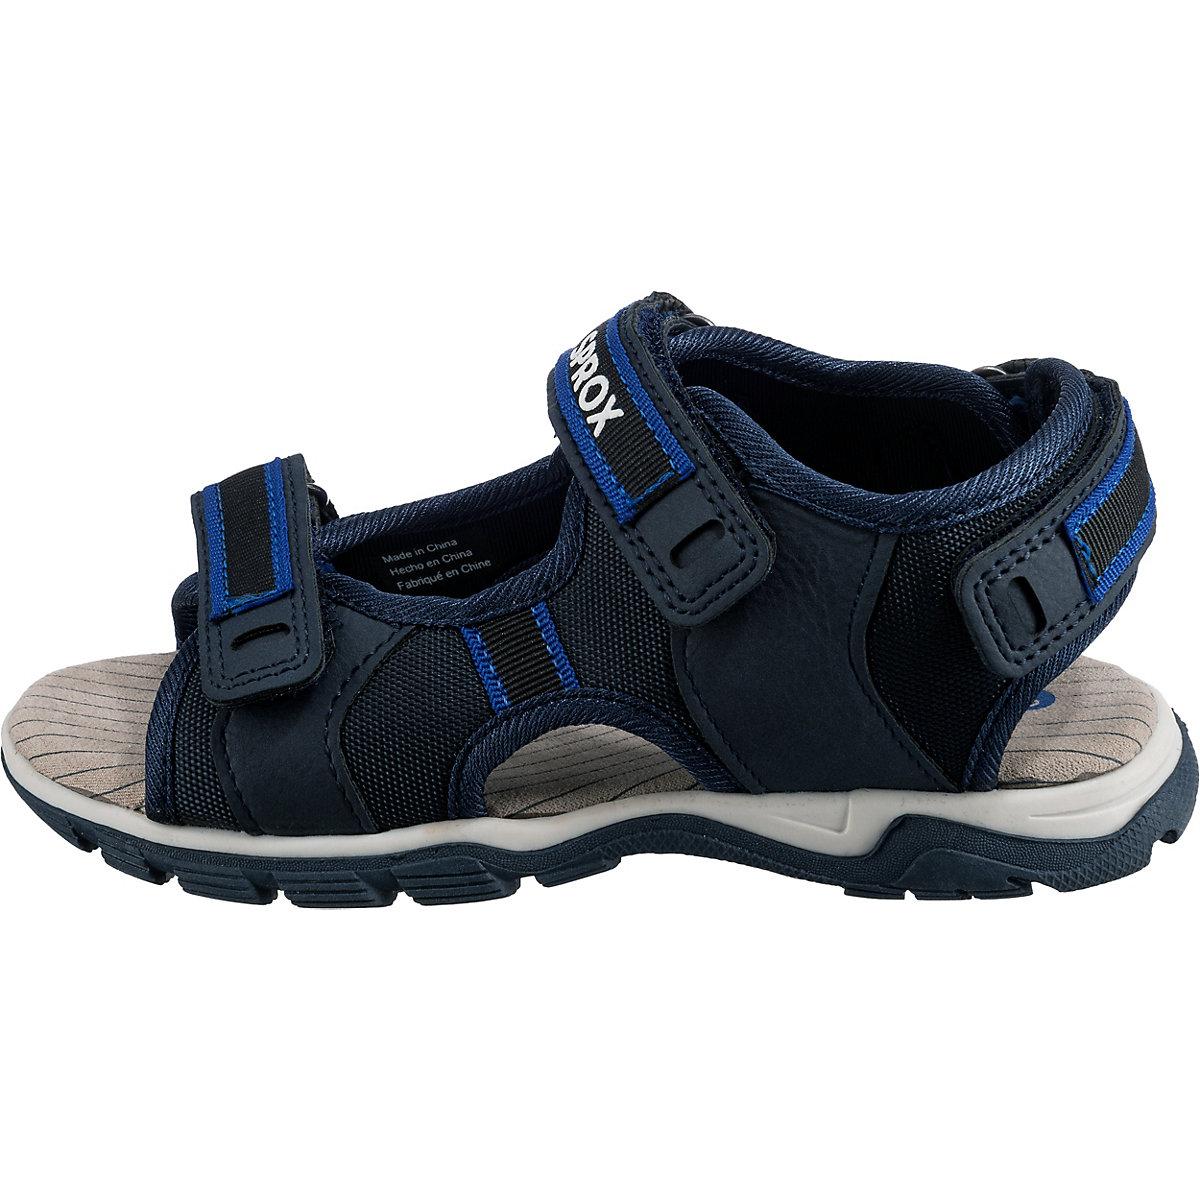 SPROX Sandalen für Jungen dunkelblau